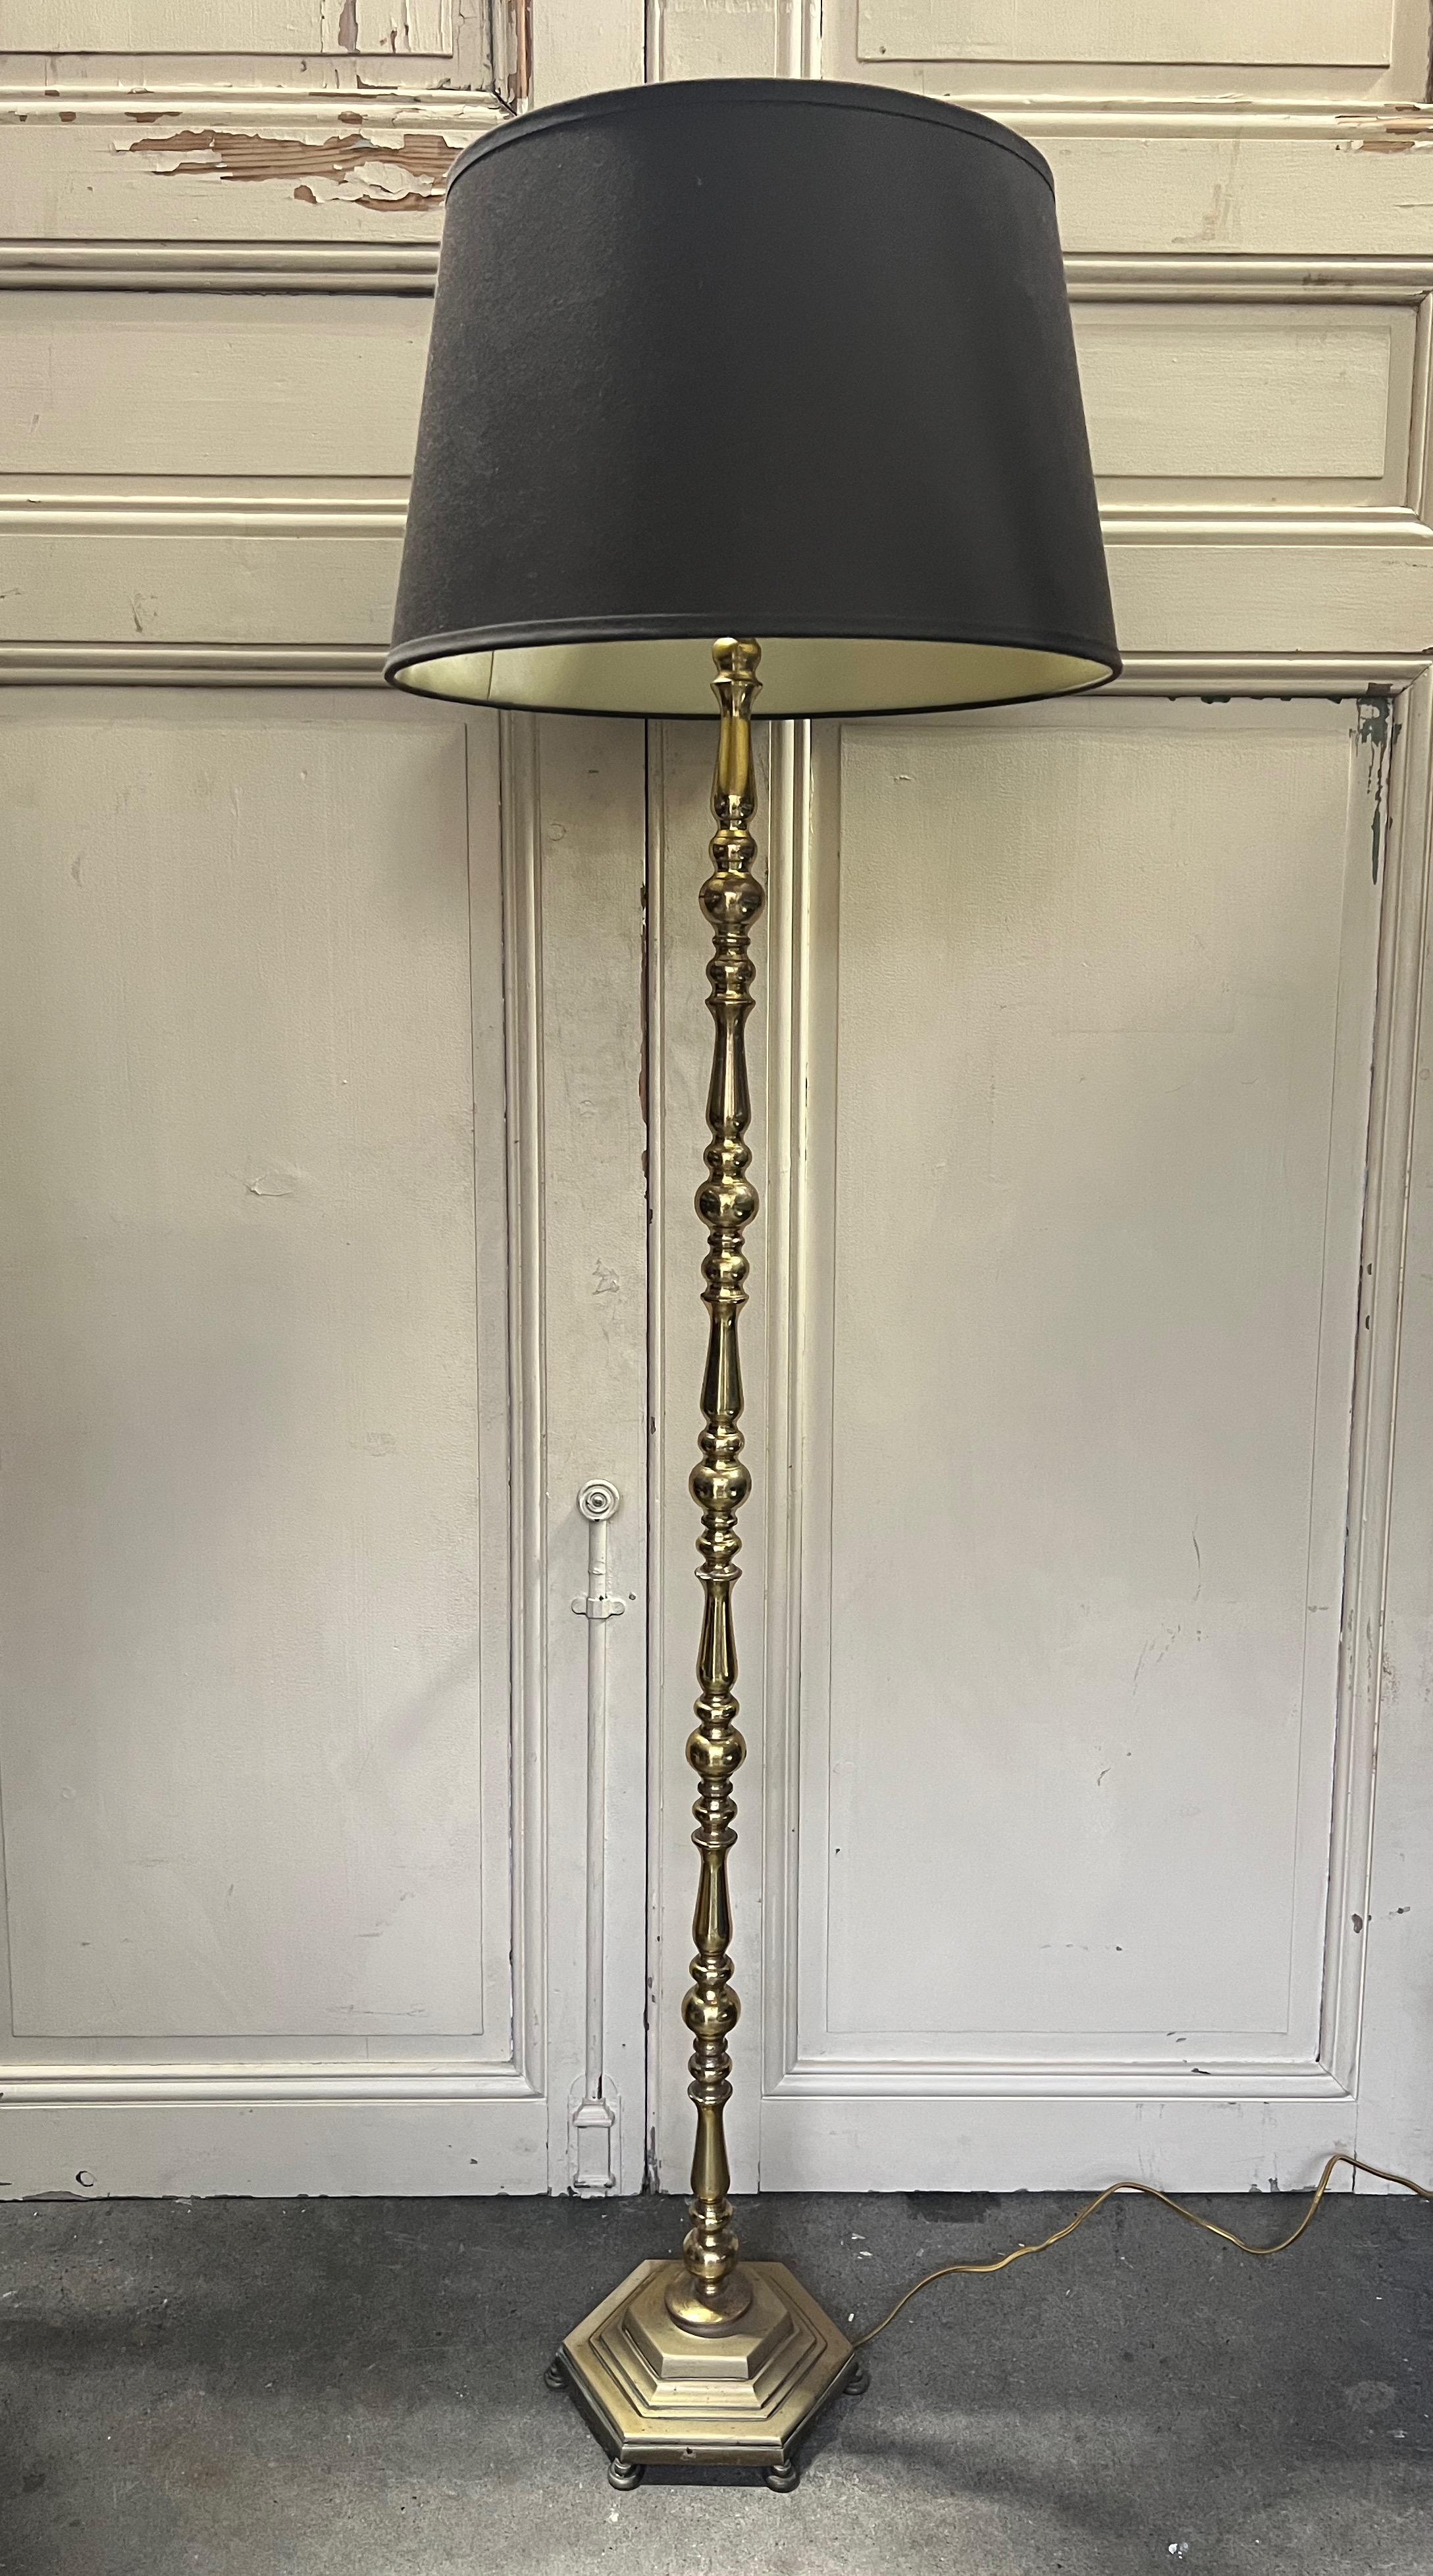 Wir präsentieren eine atemberaubende französische Stehlampe aus den 1940er Jahren, die fachmännisch aus hochwertigem Messing und Bronze gefertigt wurde. Dieses bezaubernde Stück besticht durch einen gegossenen sechseckigen Sockel und sorgfältig